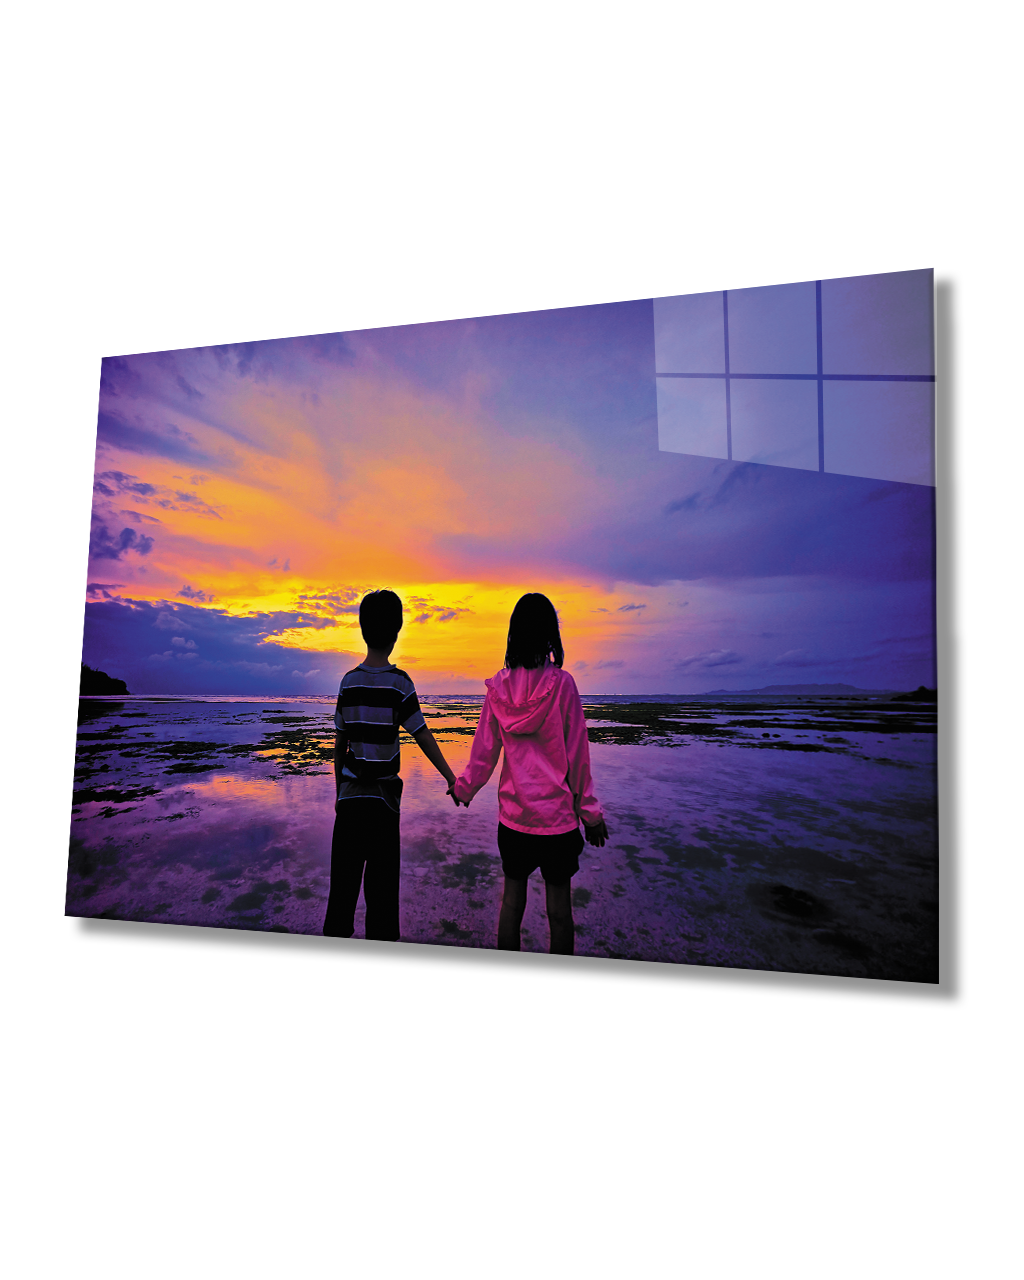 Gün Batımı Manzarasında Çocuklar Cam Tablo  4mm Dayanıklı Temperli Cam Kids Glass Table 4mm Durable Tempered Glass In Sunset Landscape